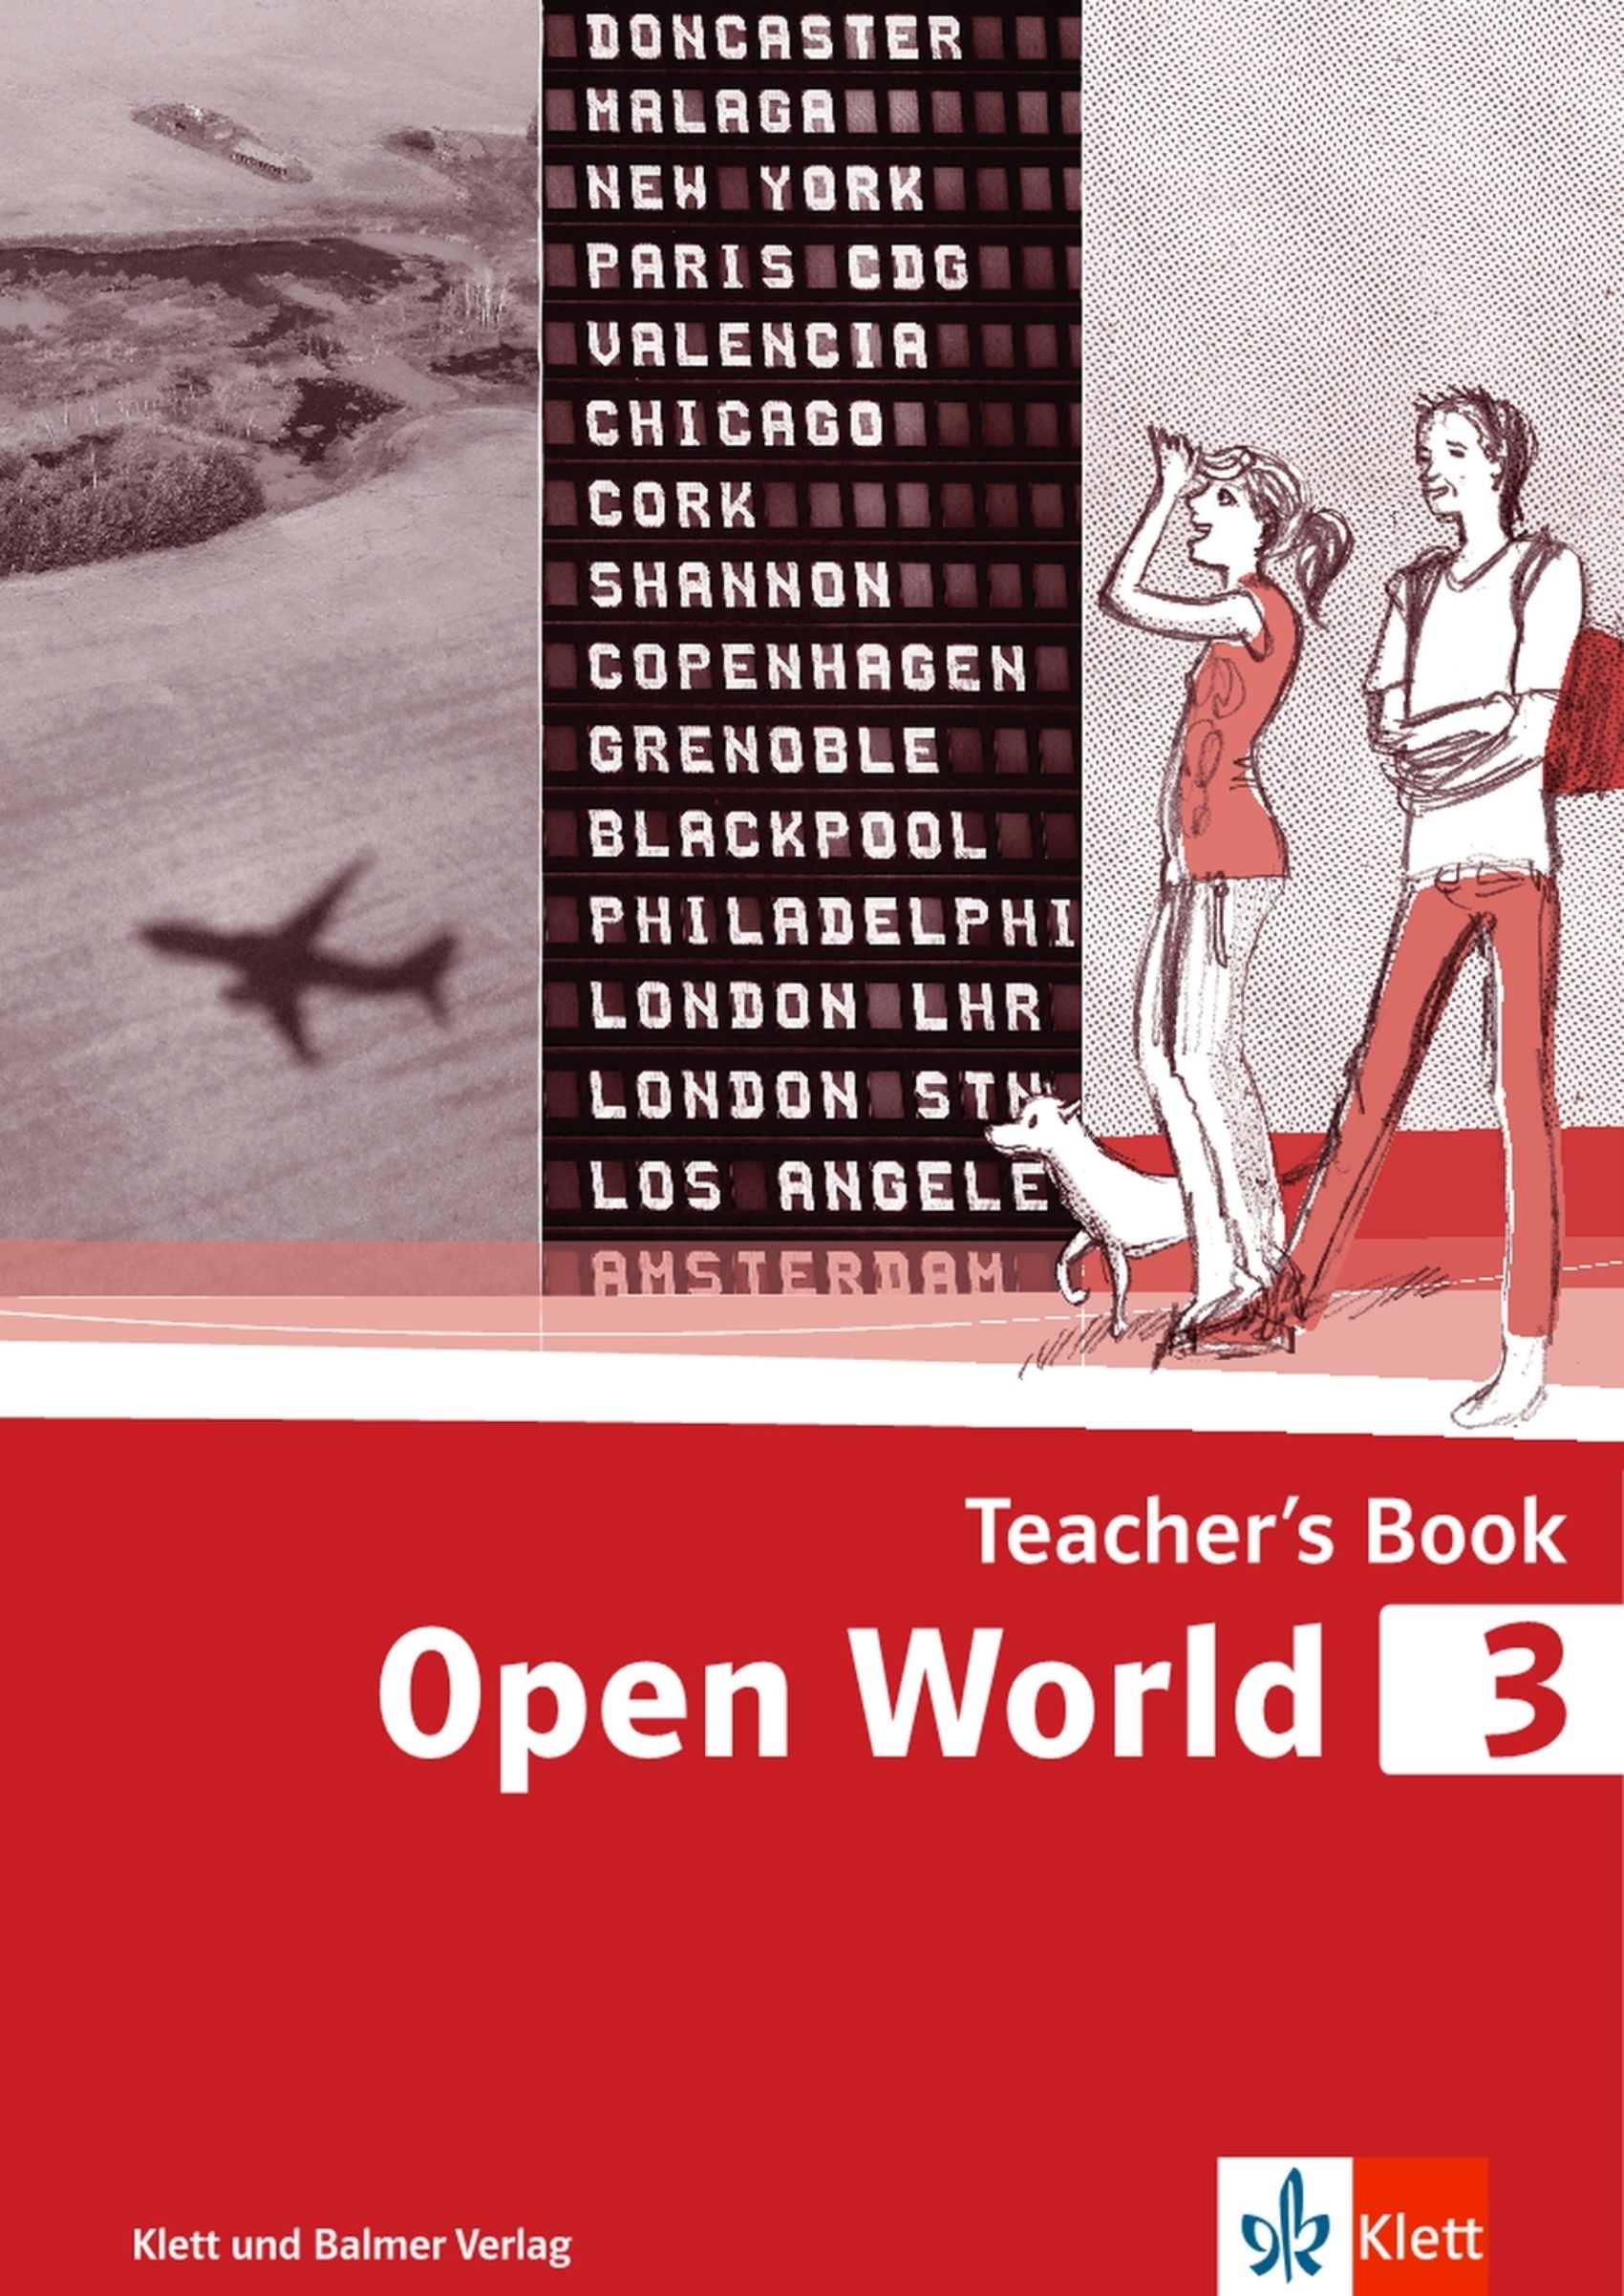 Teachers book open world 3 978 3 264 84267 8 klett und balmer